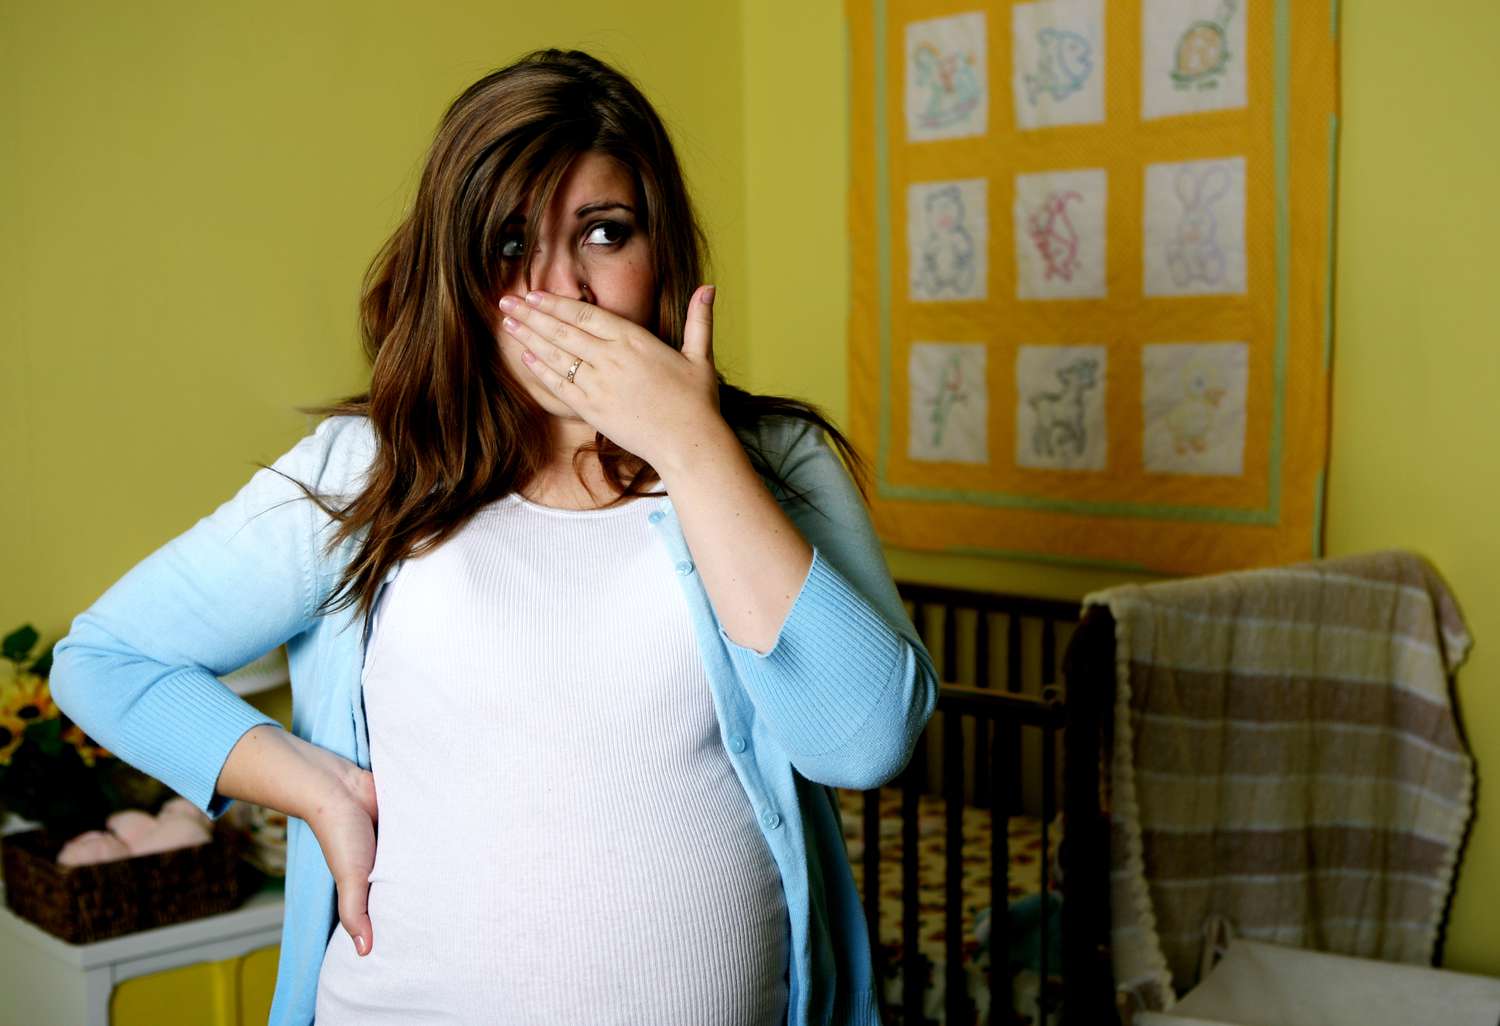 لماذا تنبعث رائحة كريهة من كل شيء أثناء الحمل ؟!            